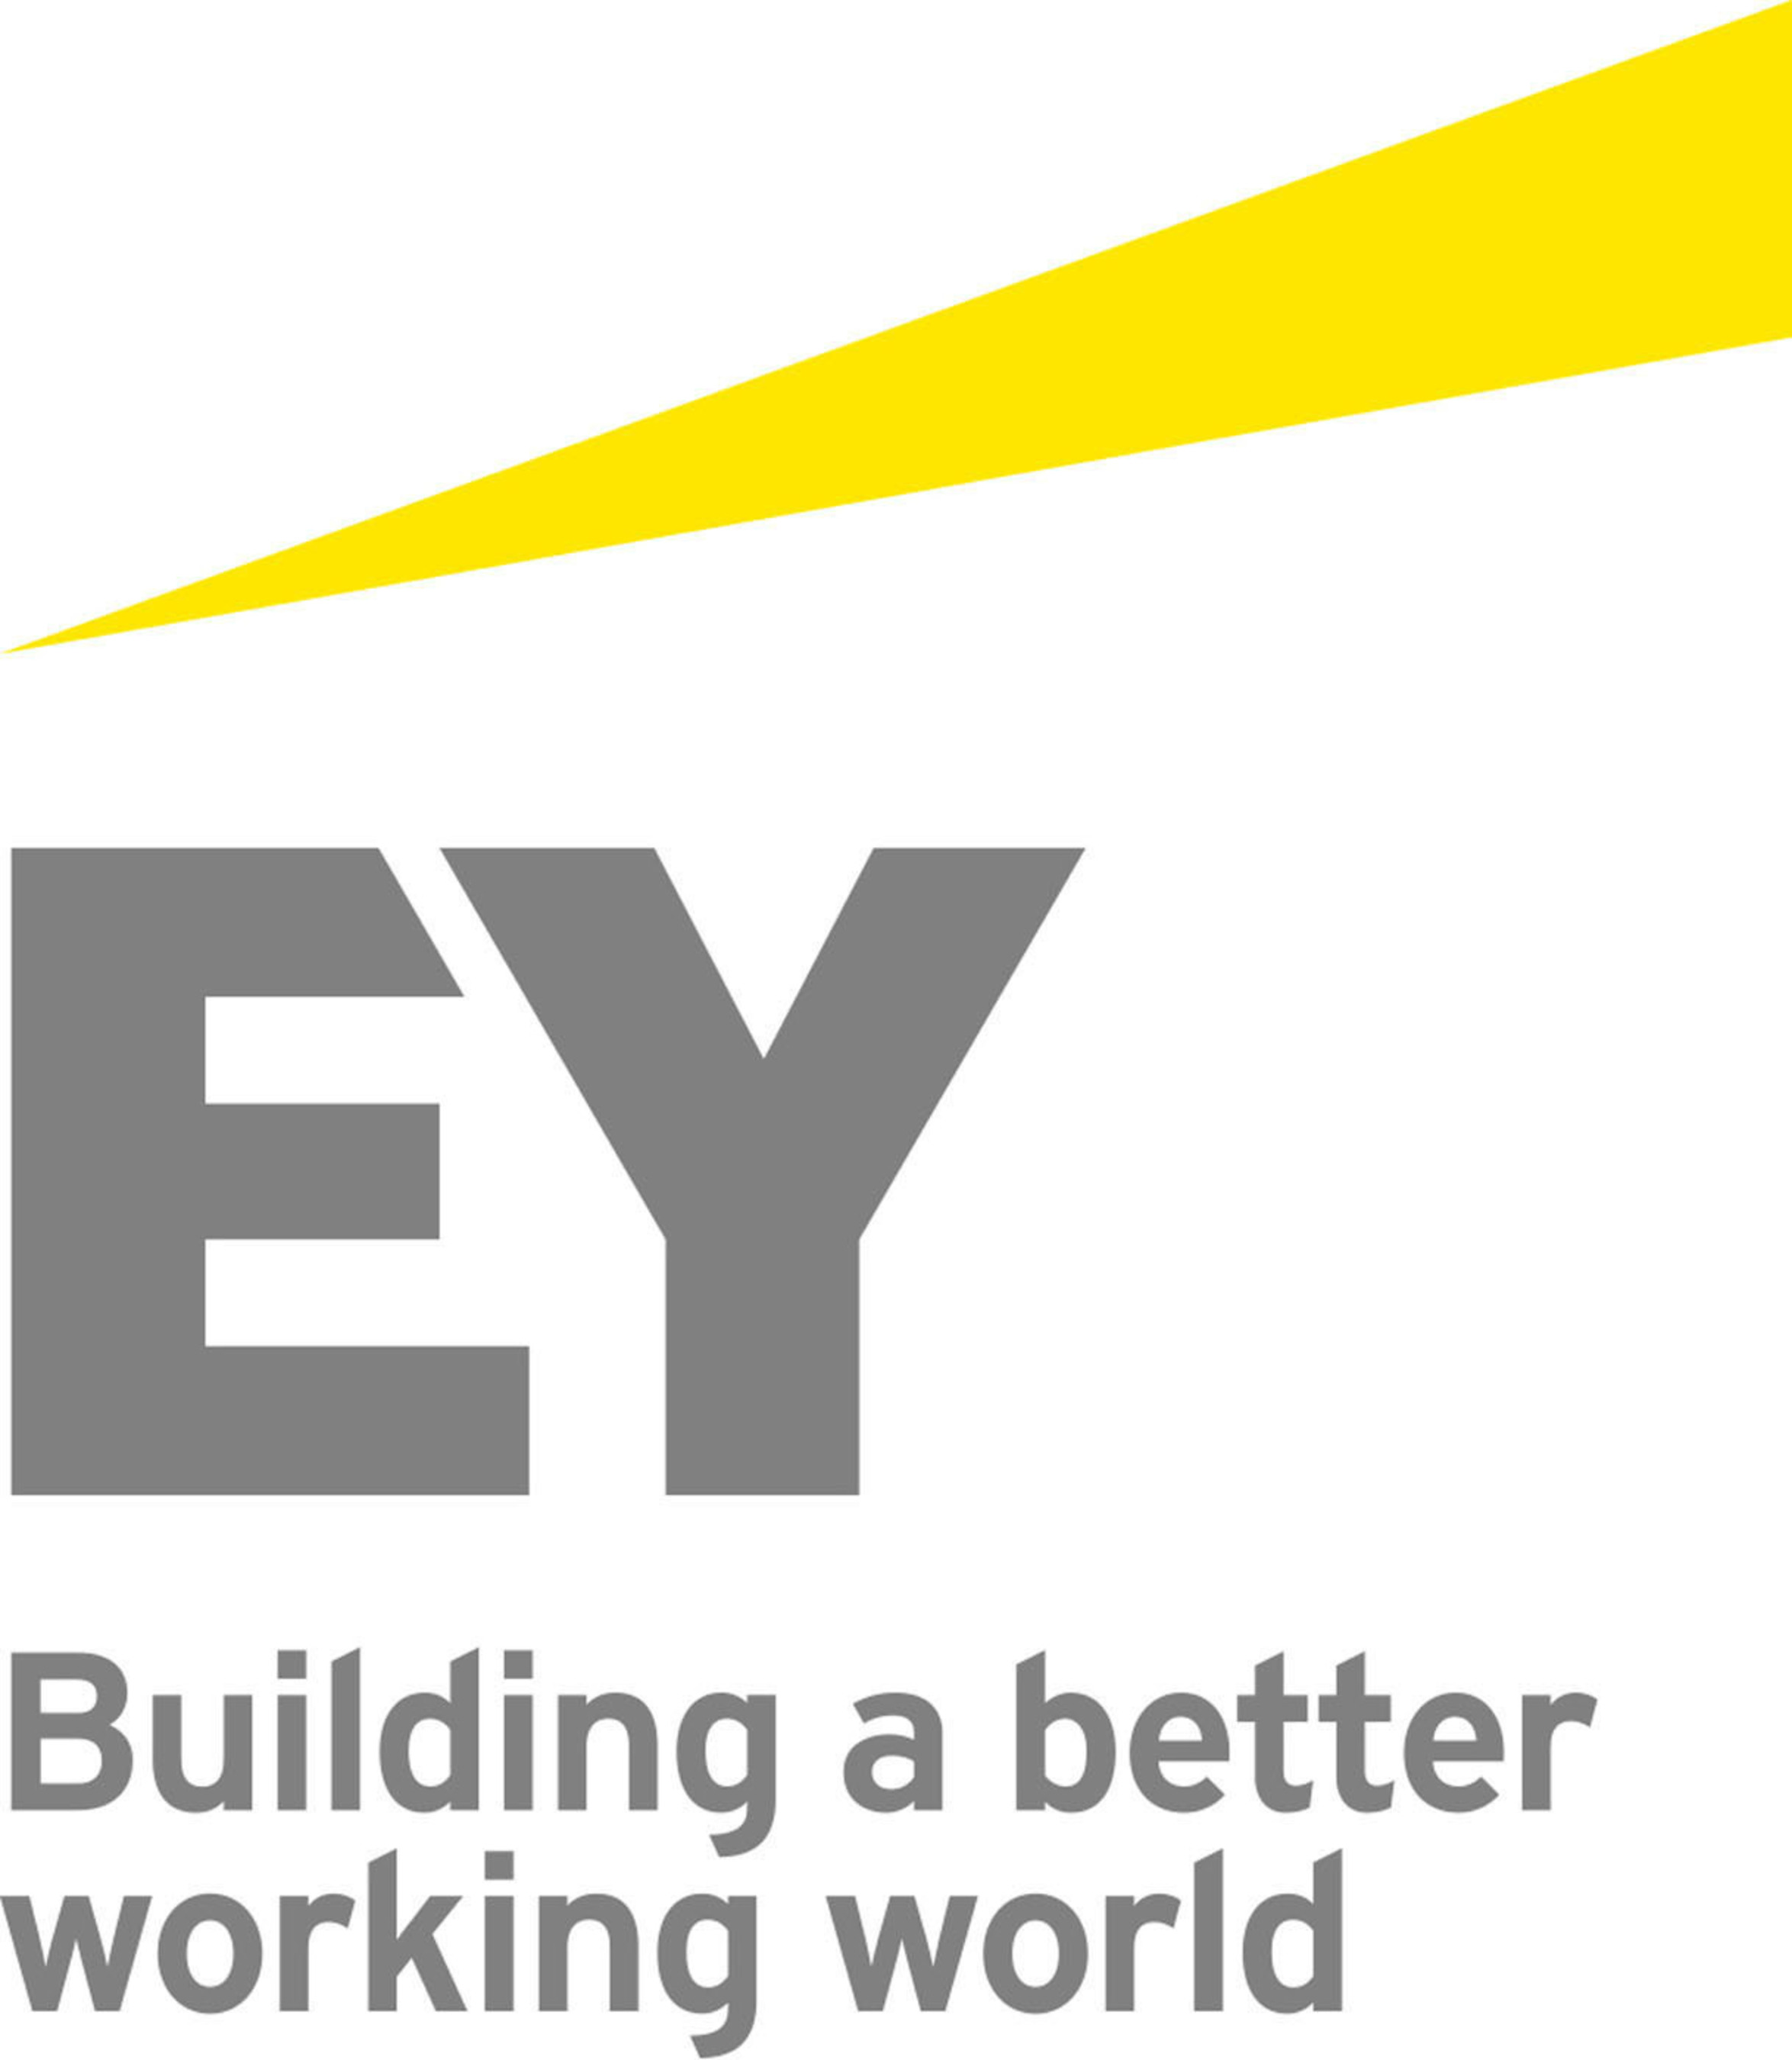 Building a better working world logo